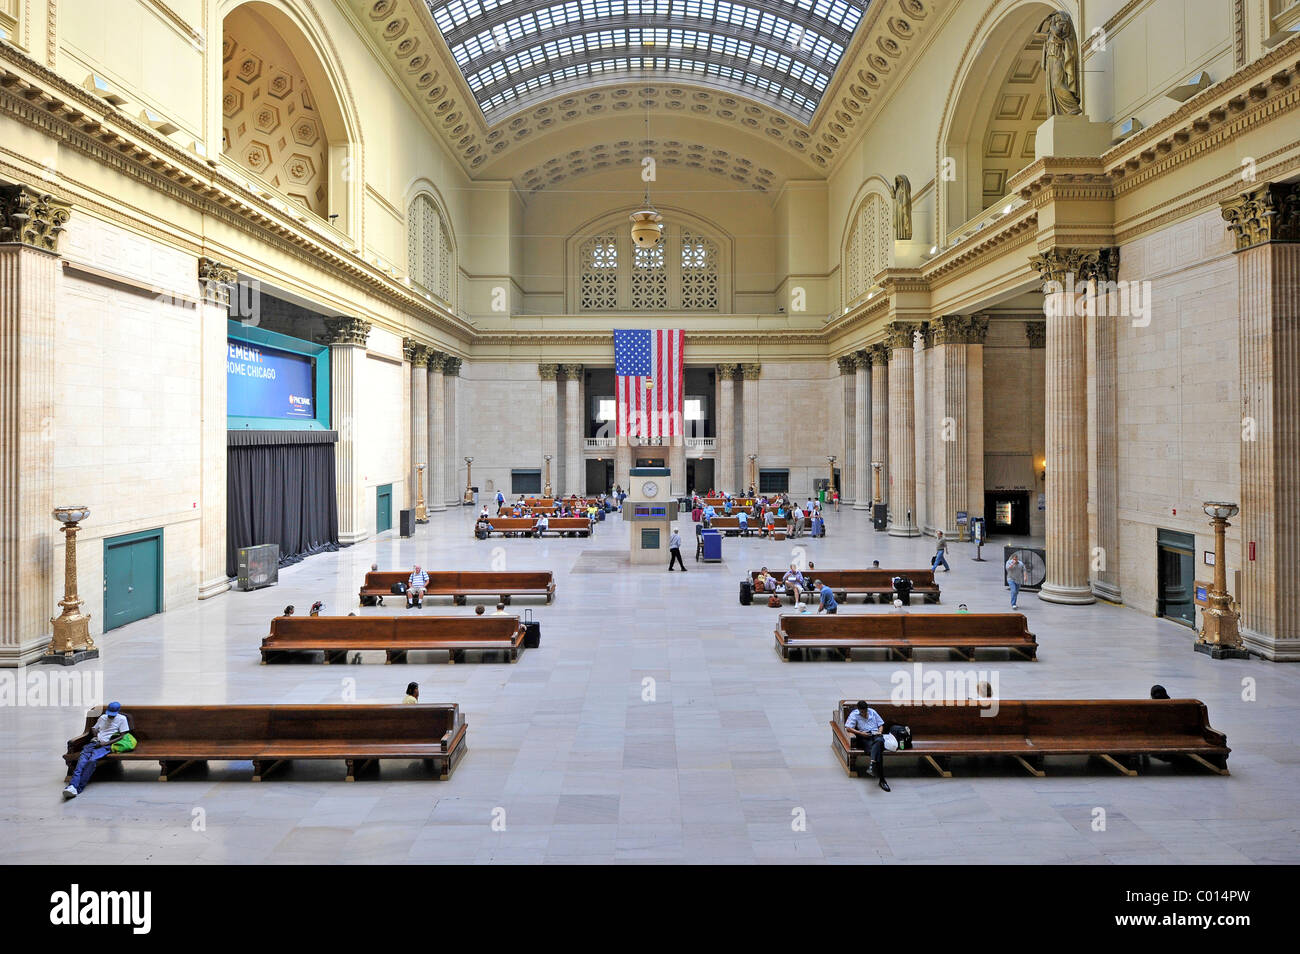 Innenansicht der großen Halle, Haupt warten Zimmer, Union Station, Chicago, Illinois, Vereinigte Staaten von Amerika, USA Stockfoto